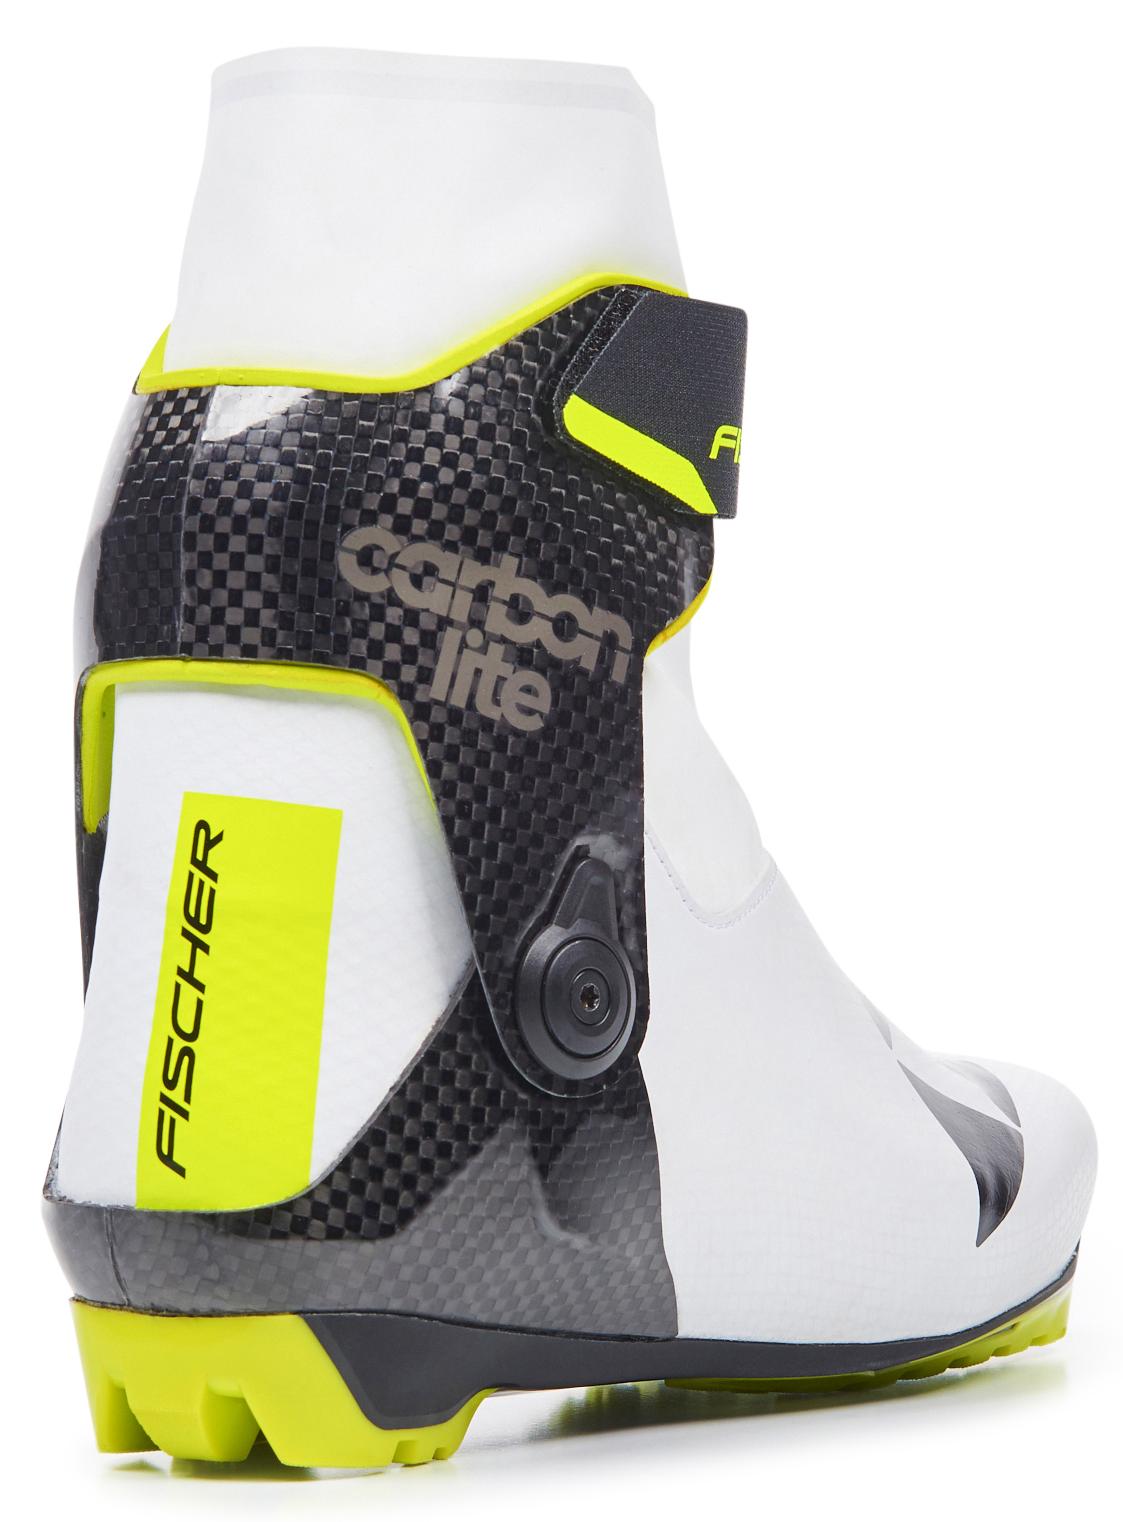 Ботинки лыжные Fischer Carbonlite Skate WS (S11520) купить в интернетмагазине sportset.net